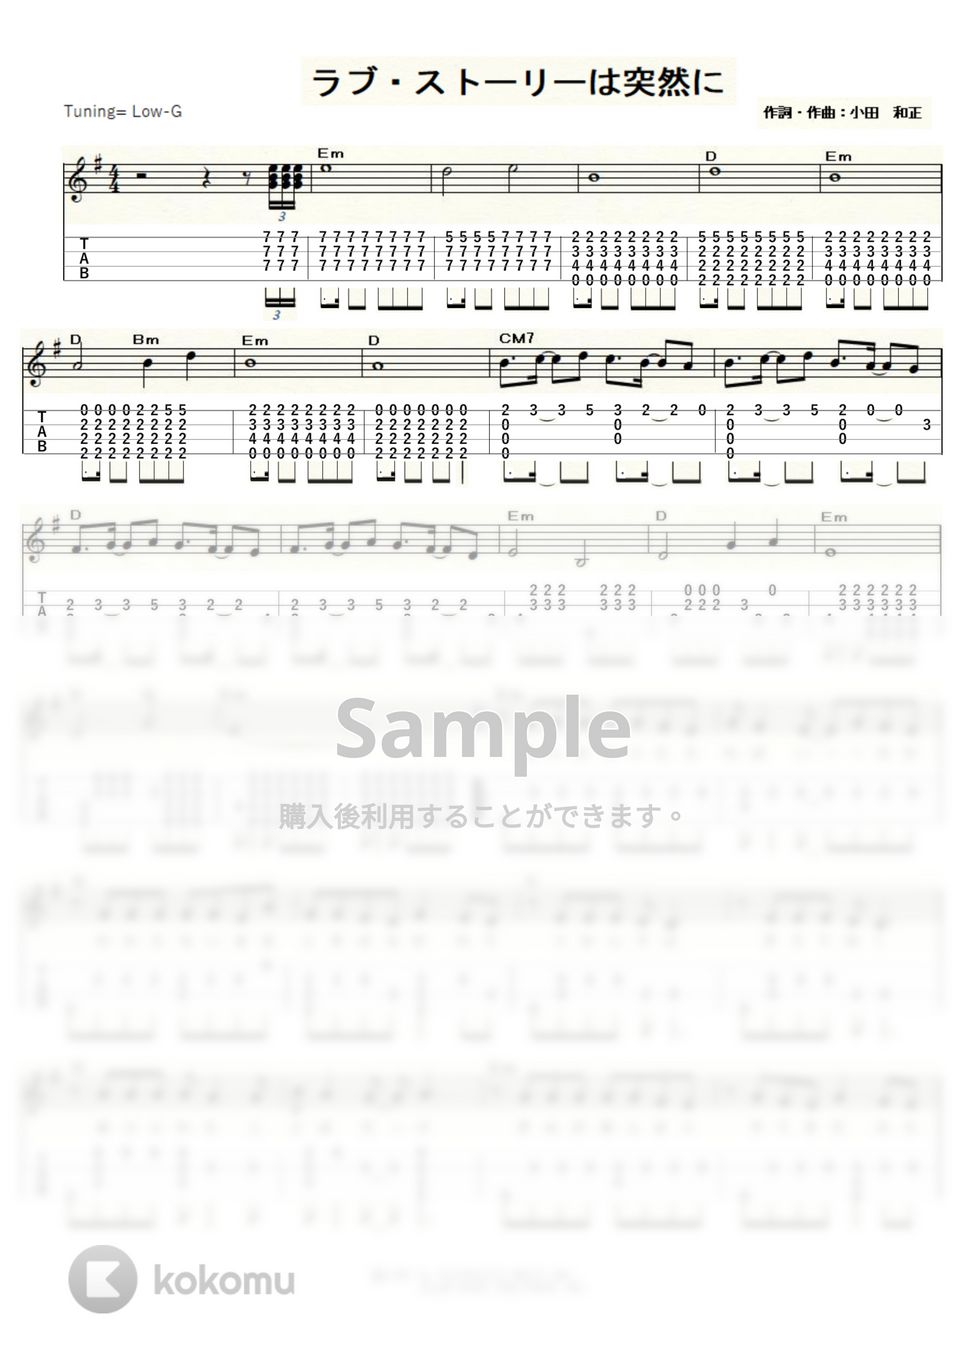 小田和正 - ラブ・ストーリーは突然に (Low-G) by ukulelepapa